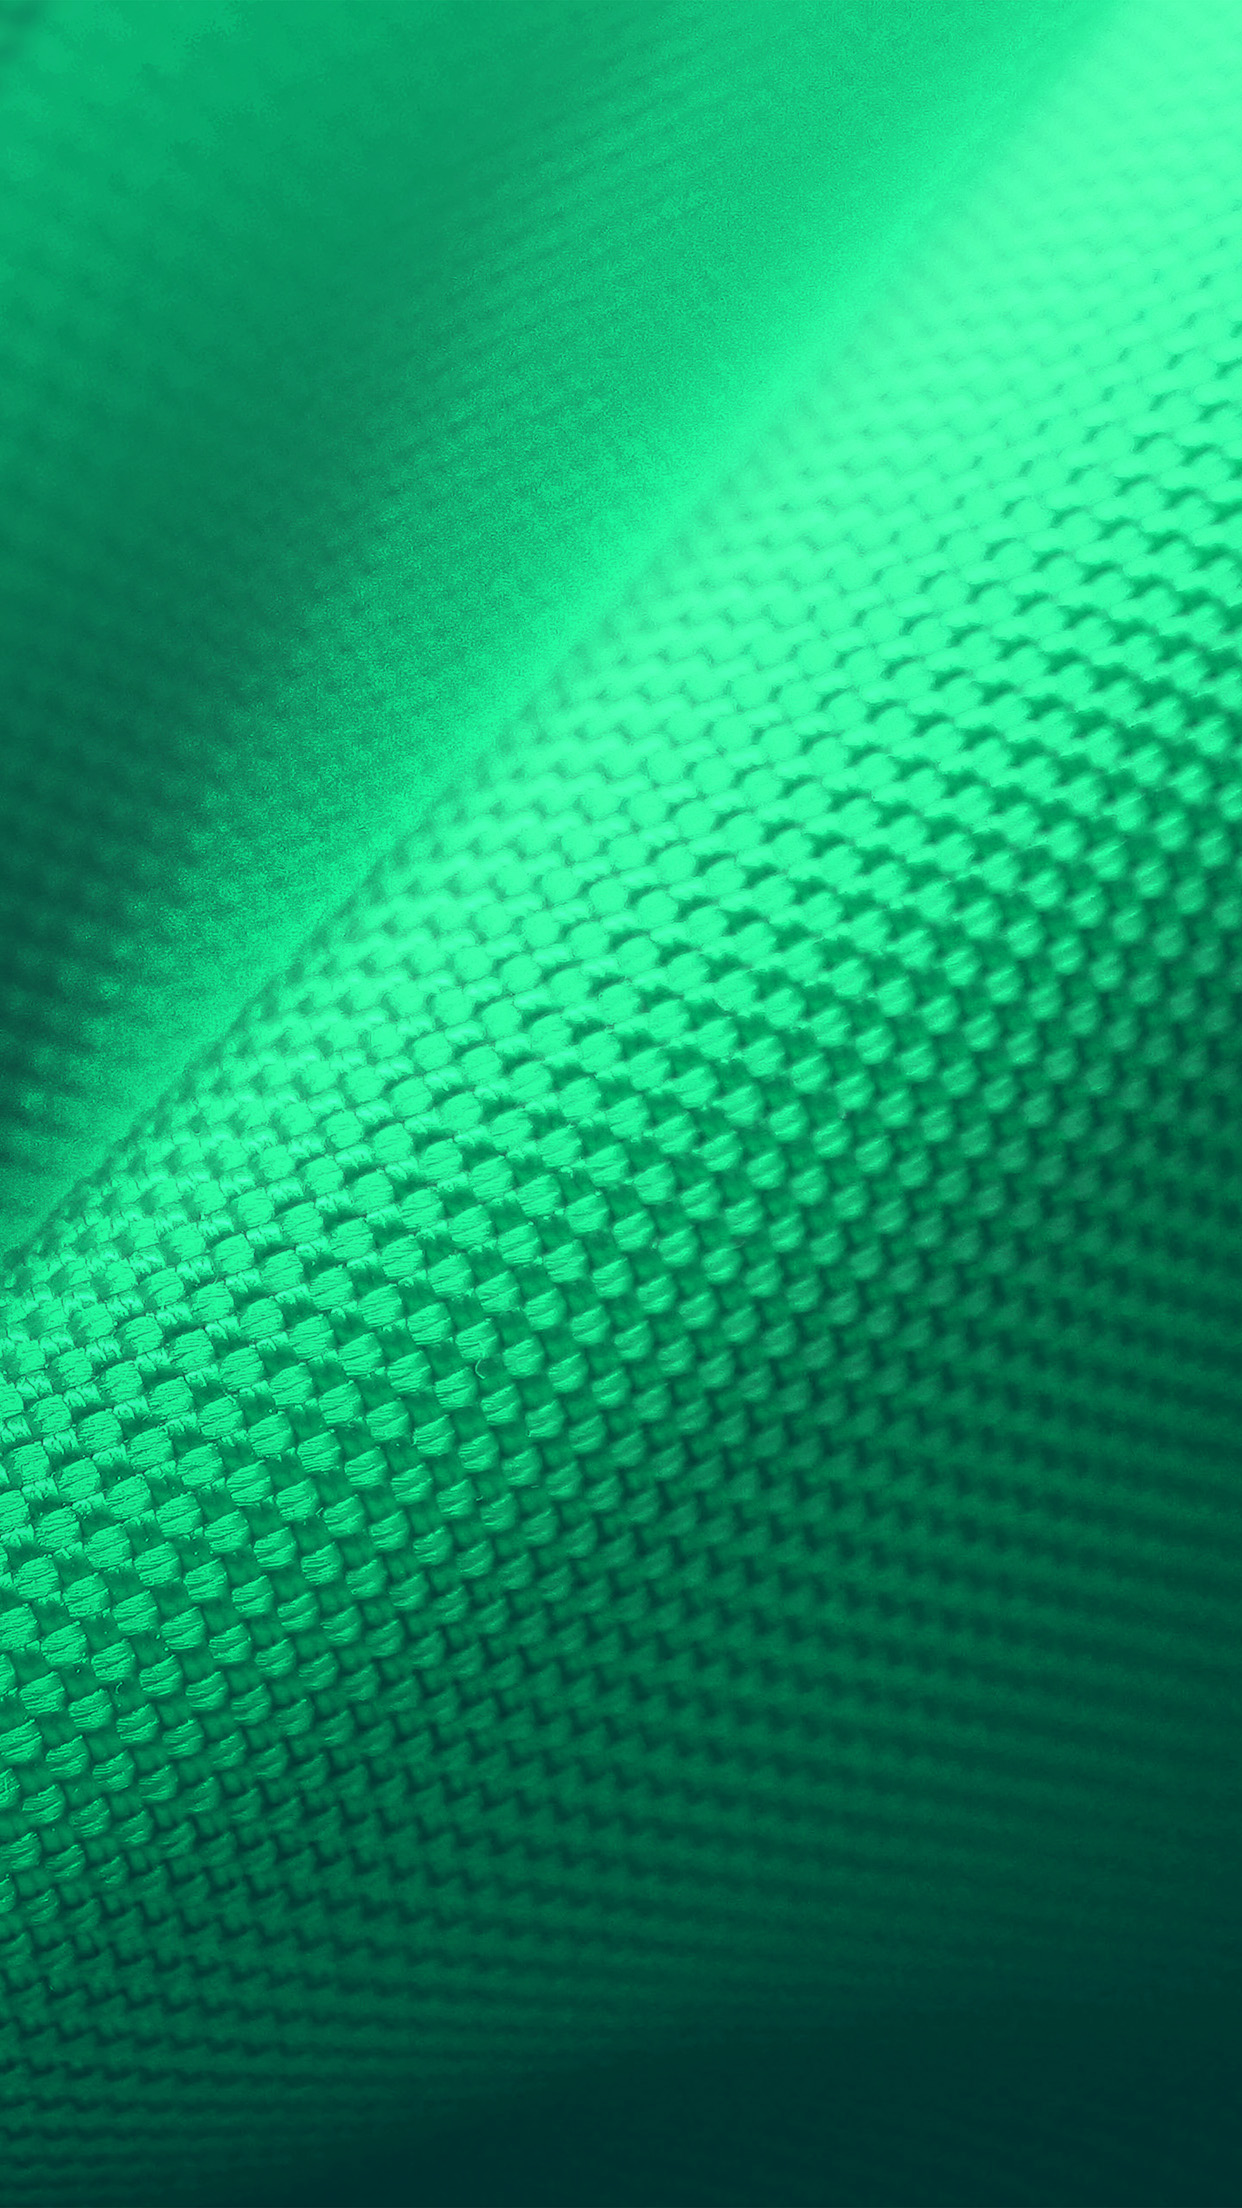 点線の緑色パターン素材テクスチャiphone 6 Plus壁紙 1242 28 Iphoneチーズ